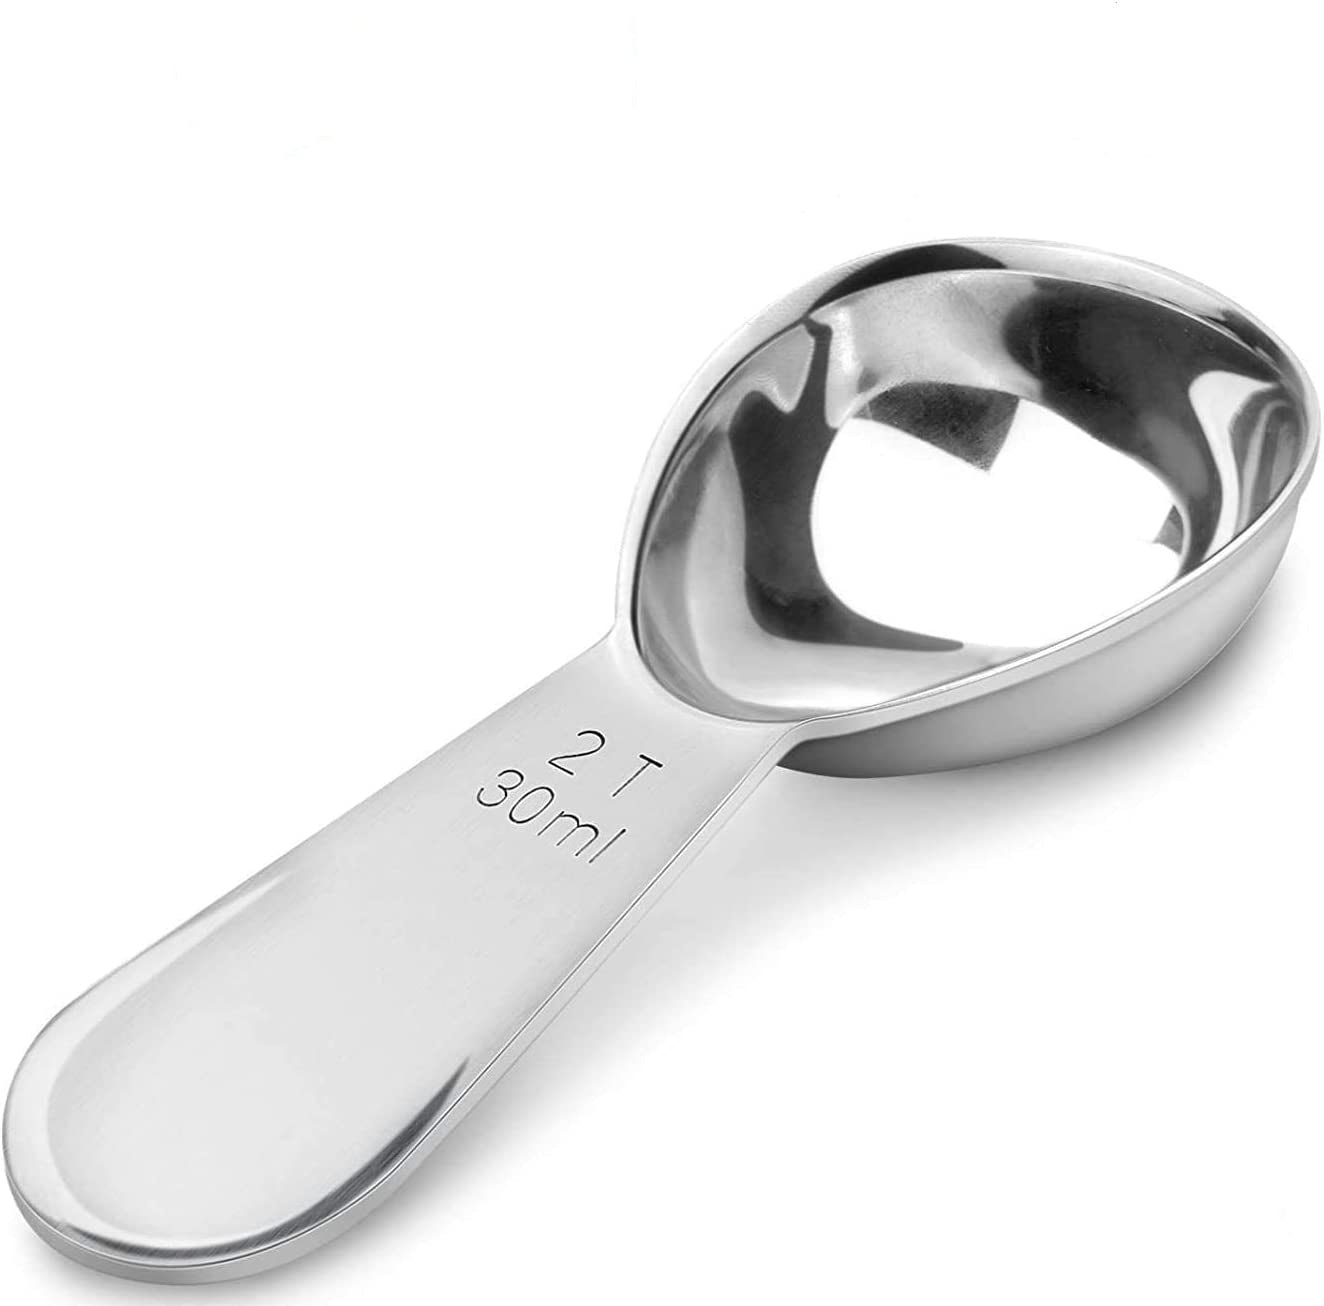 Coffee Scoop - 30ML Stainless Steel Table Spoon